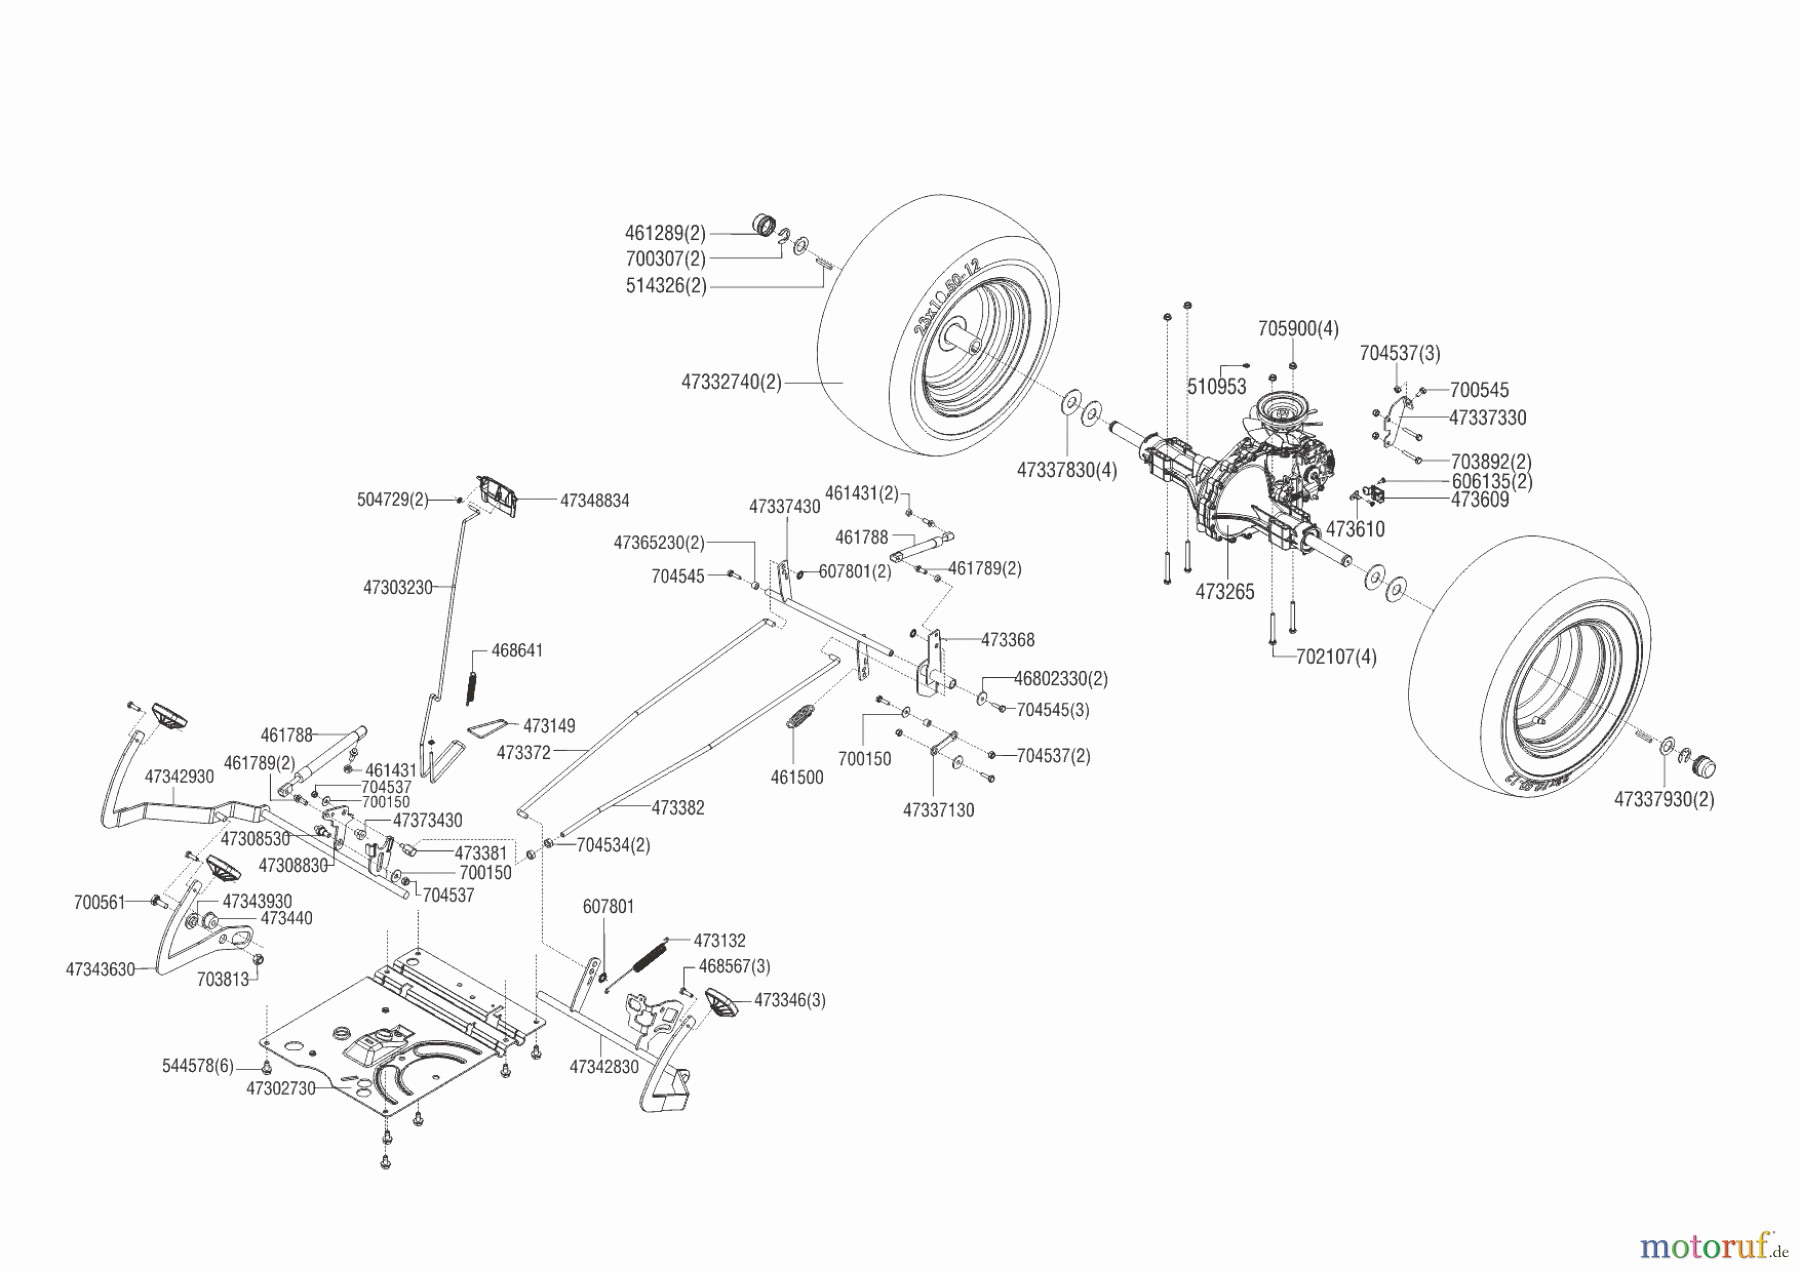  Powerline Gartentechnik Rasentraktor T23-125.4 HD V2 (ohne Mähwerk)  02/2014 Seite 4